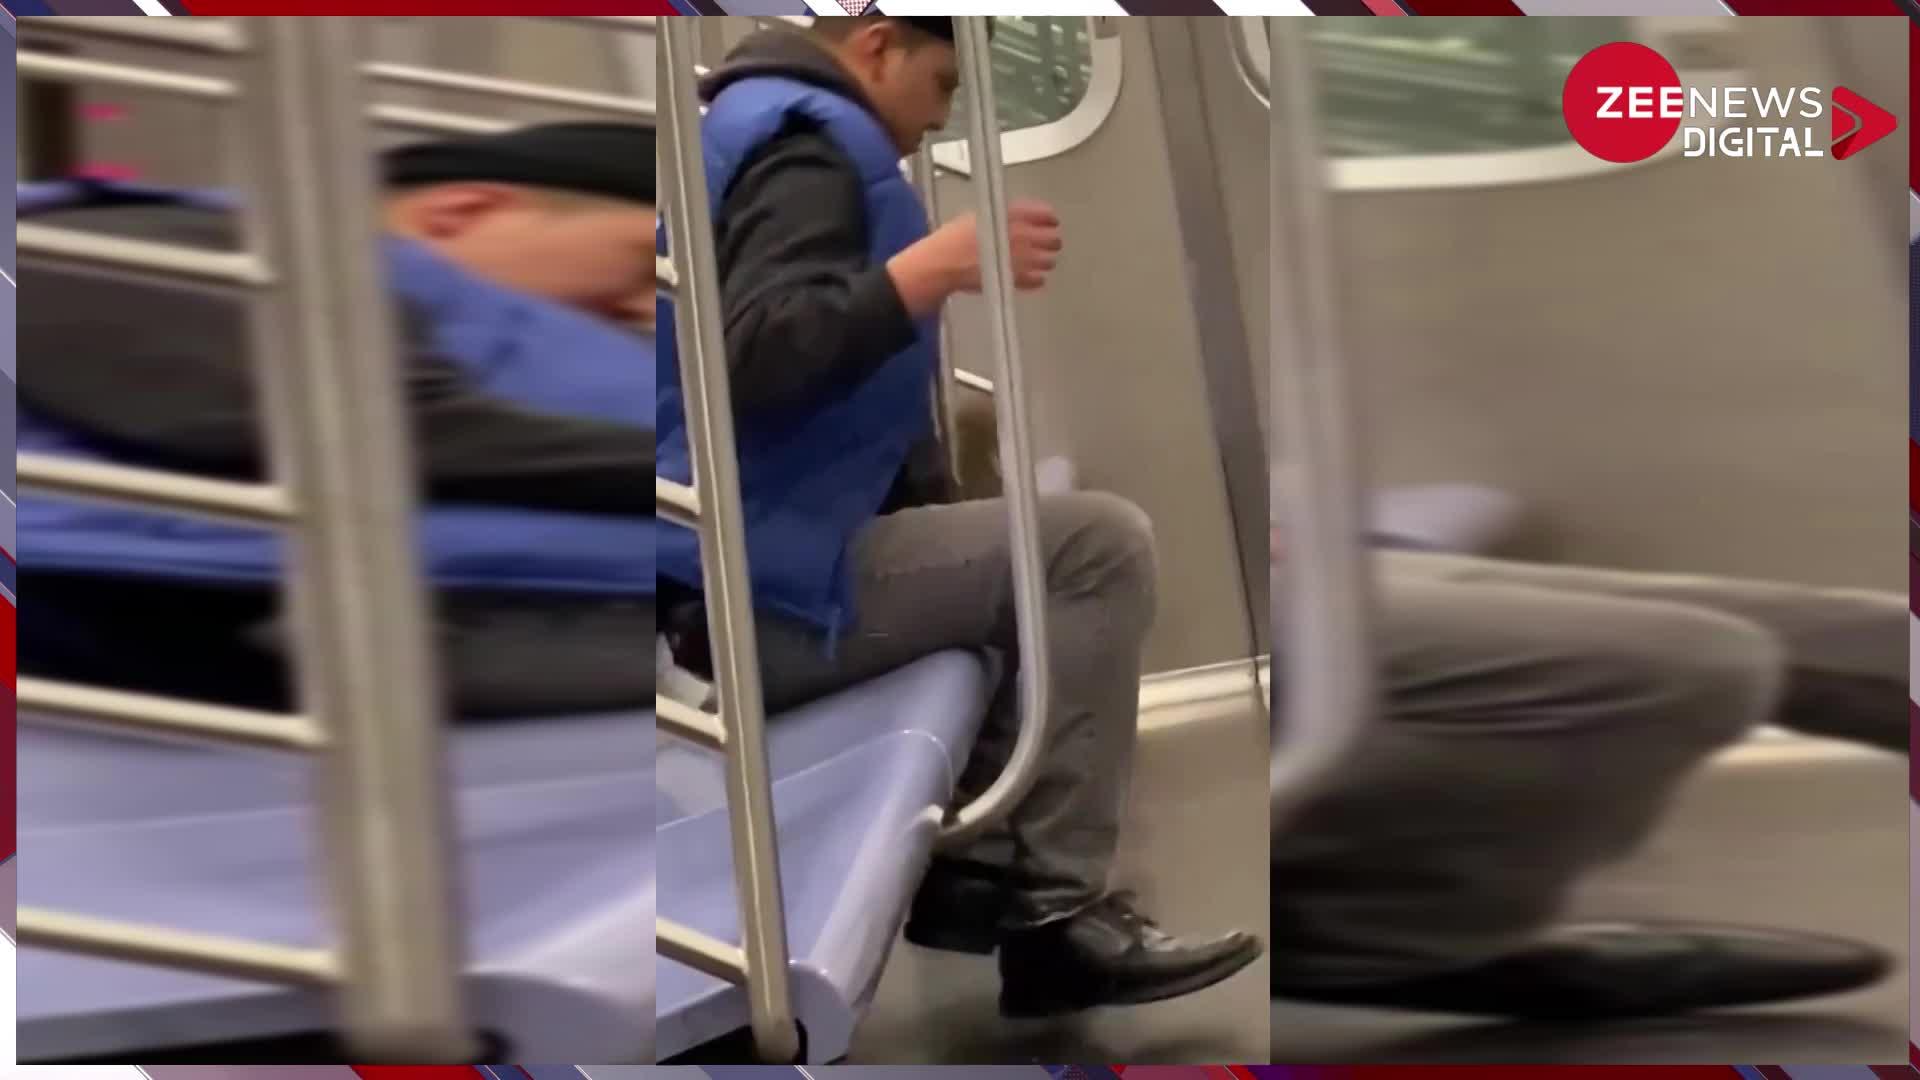 Viral Video: मेट्रो में सो रहा था युवक, चूहा चढ़ गया ऊपर... आंख खुलते ही शख्स ने लगा दी छलांग, देख नहीं रुकेगी हंसी